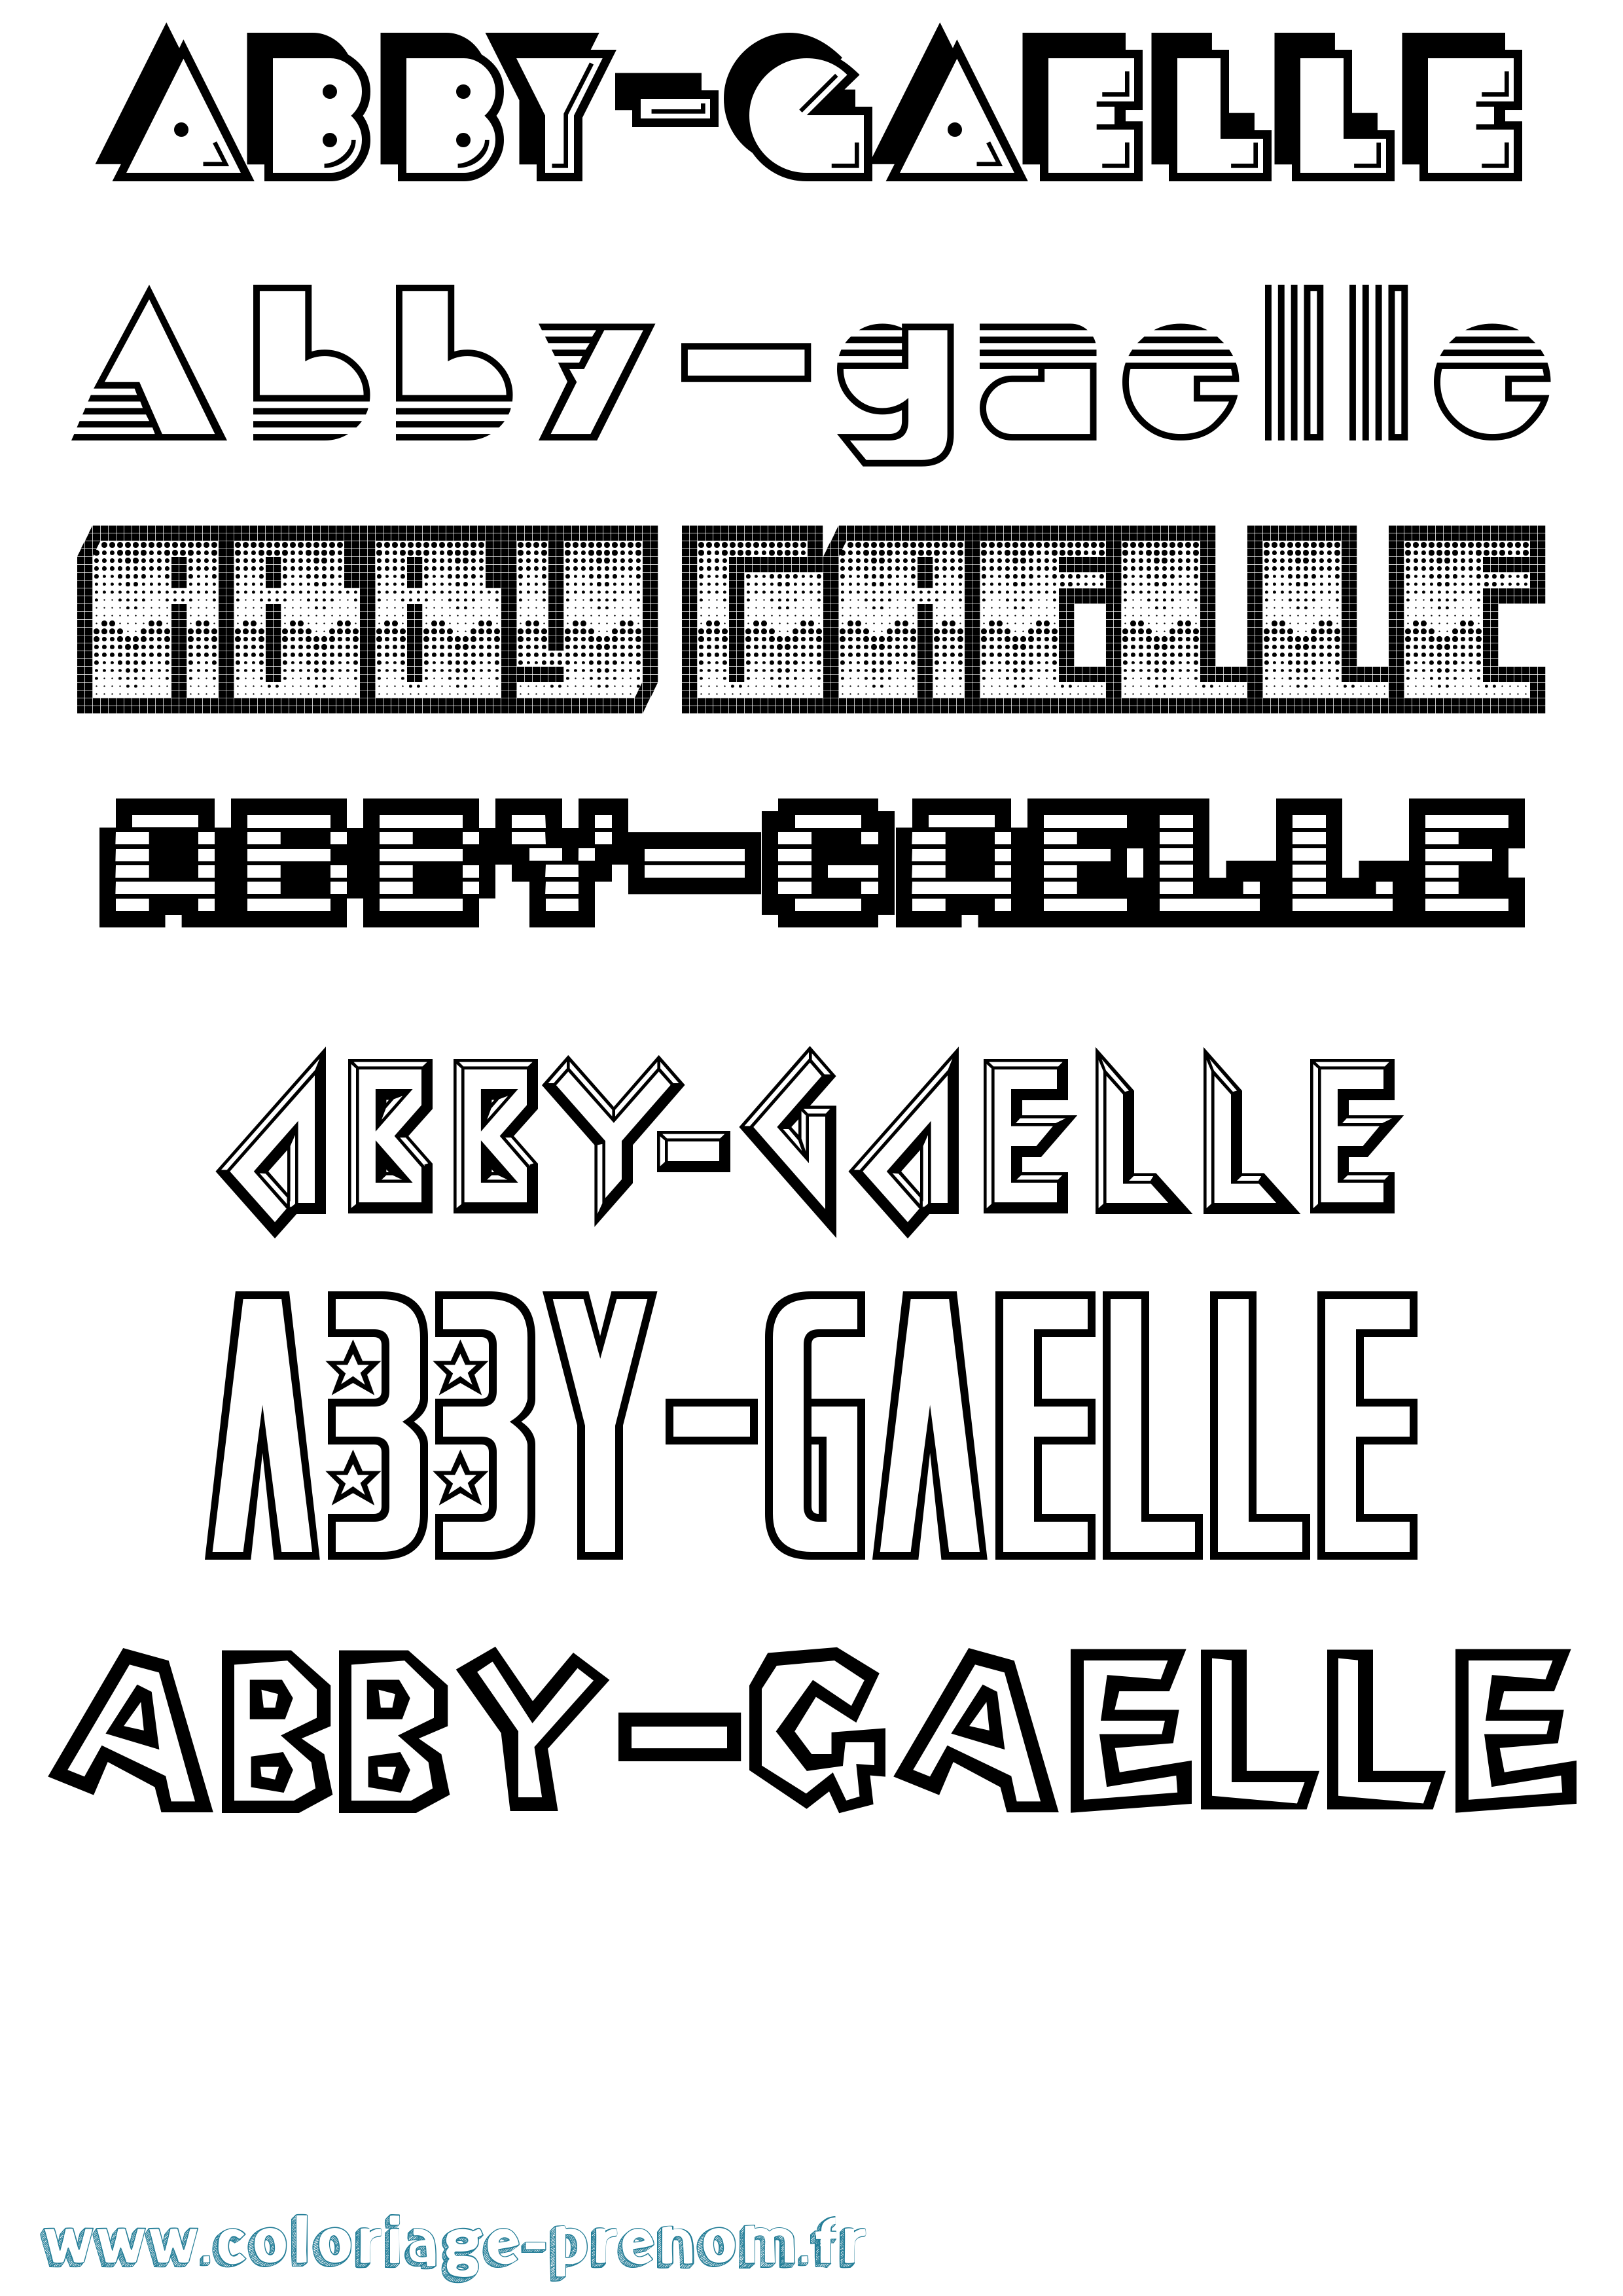 Coloriage prénom Abby-Gaelle Jeux Vidéos